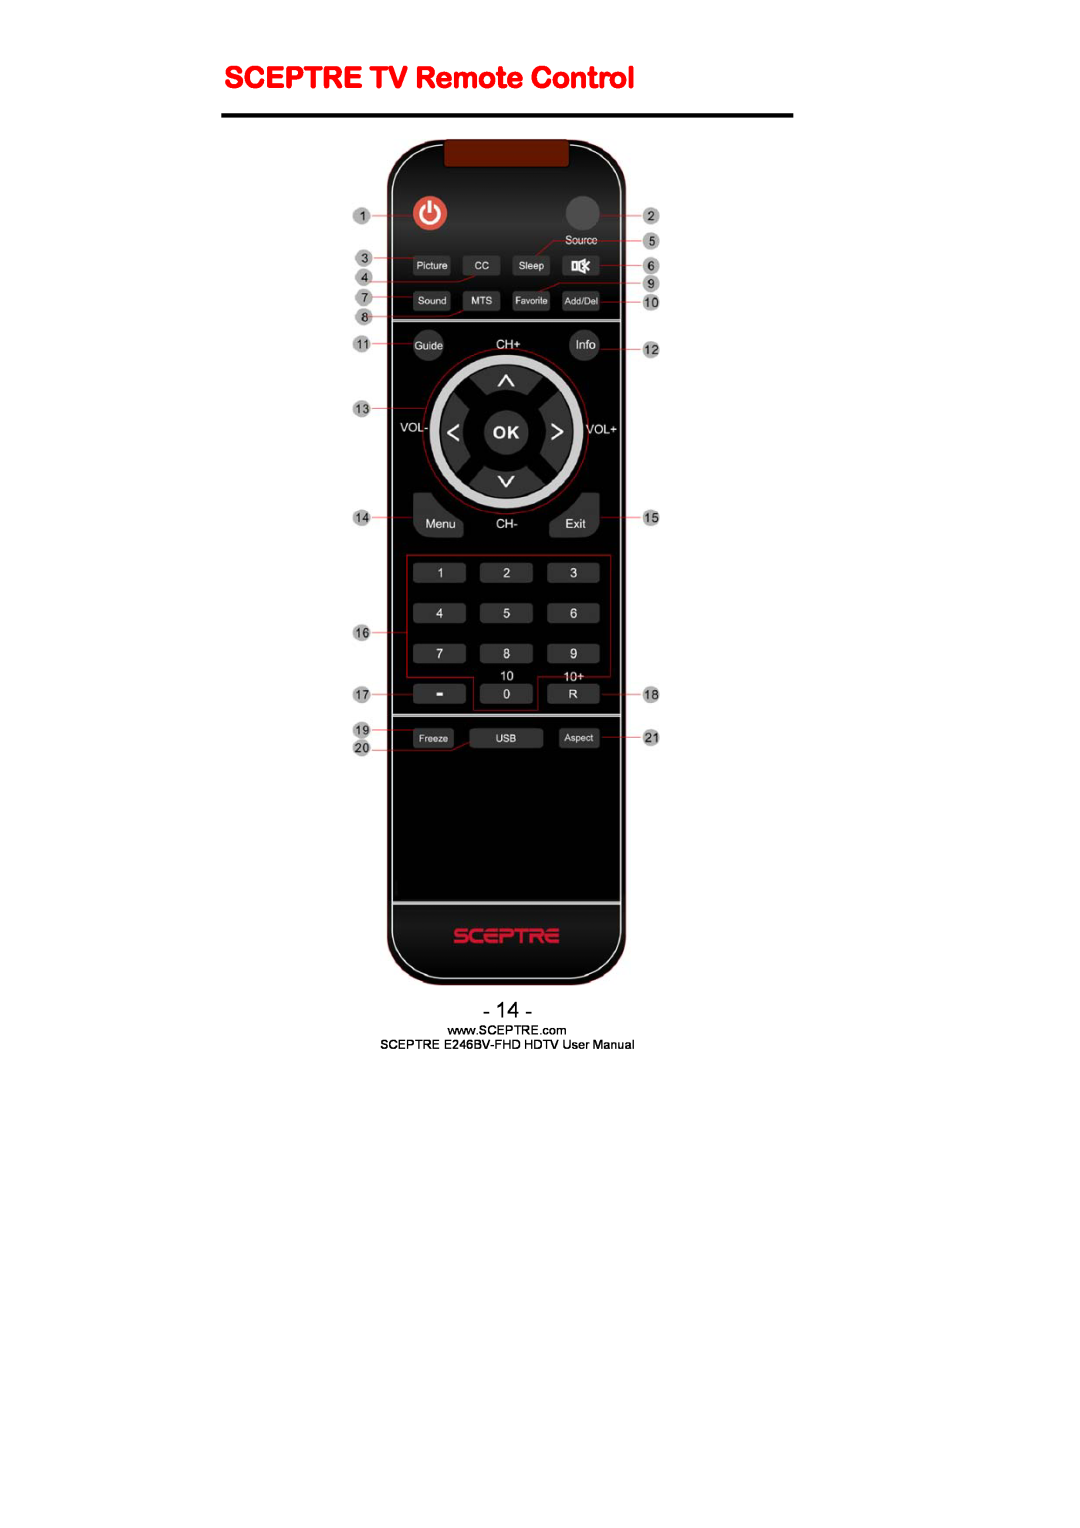 Sceptre Technologies E236BV-FHD, LED HDTV user manual SCEPTRE TV Remote Control, SCEPTRE E246BV-FHD HDTV User Manual 